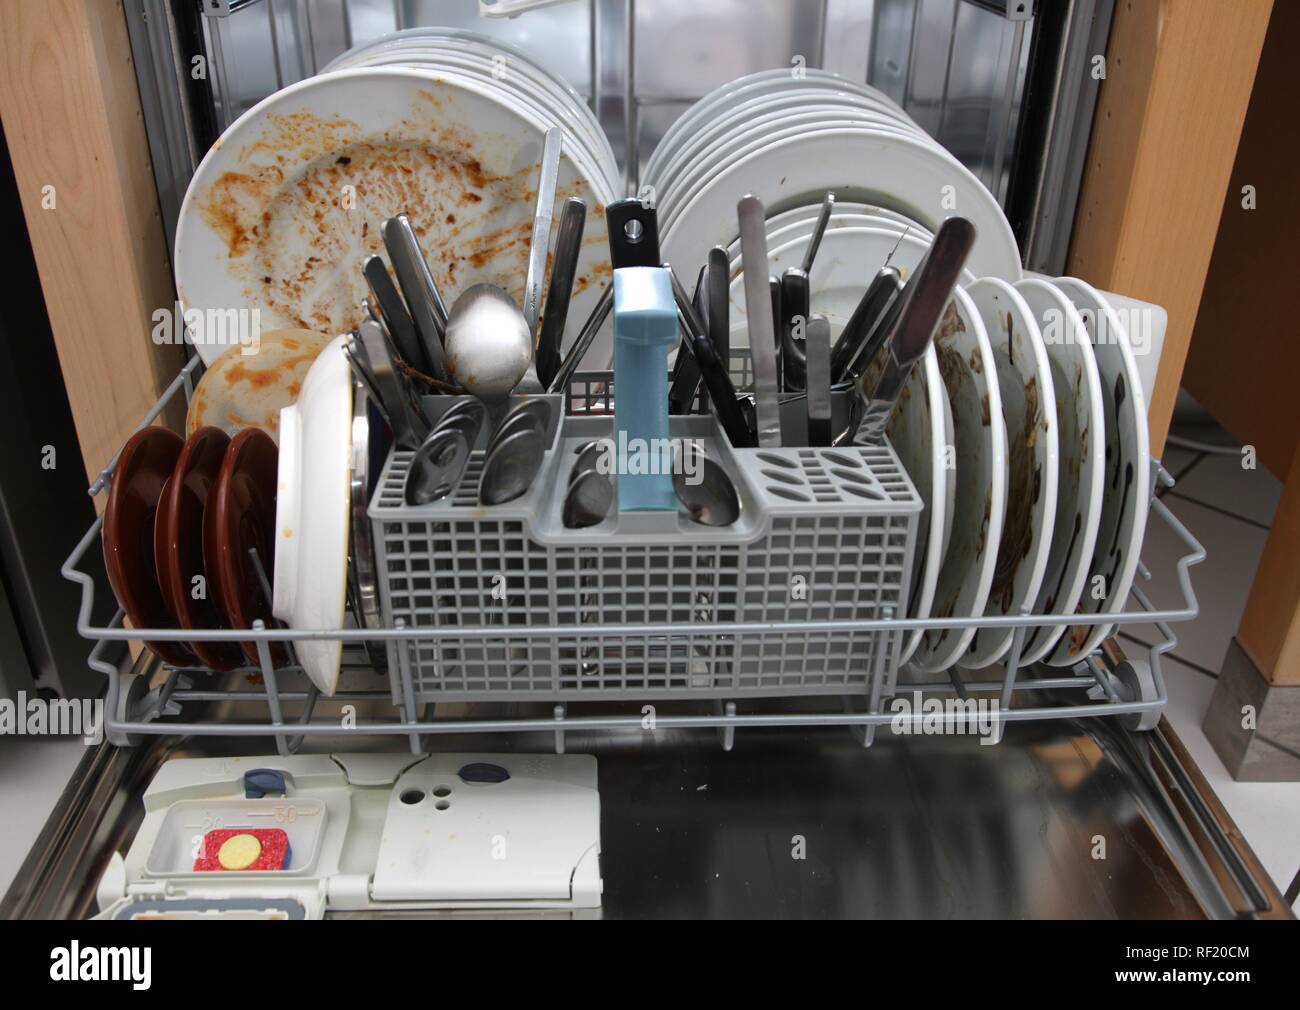 Lave-vaisselle pleine de vaisselle sale Photo Stock - Alamy